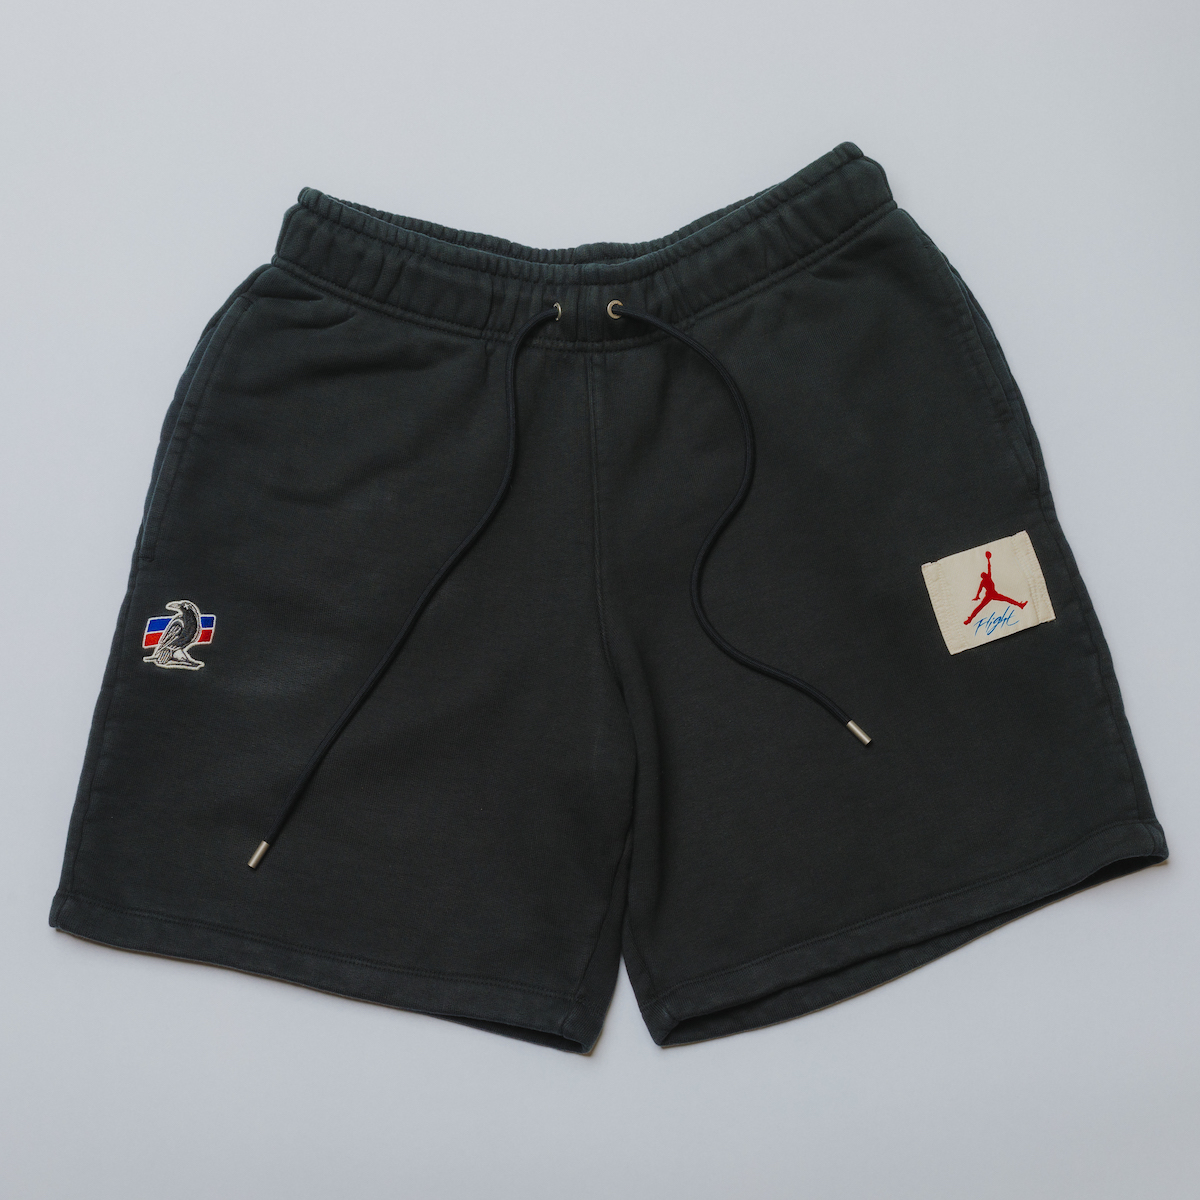 Two18 Air Jordan Shorts